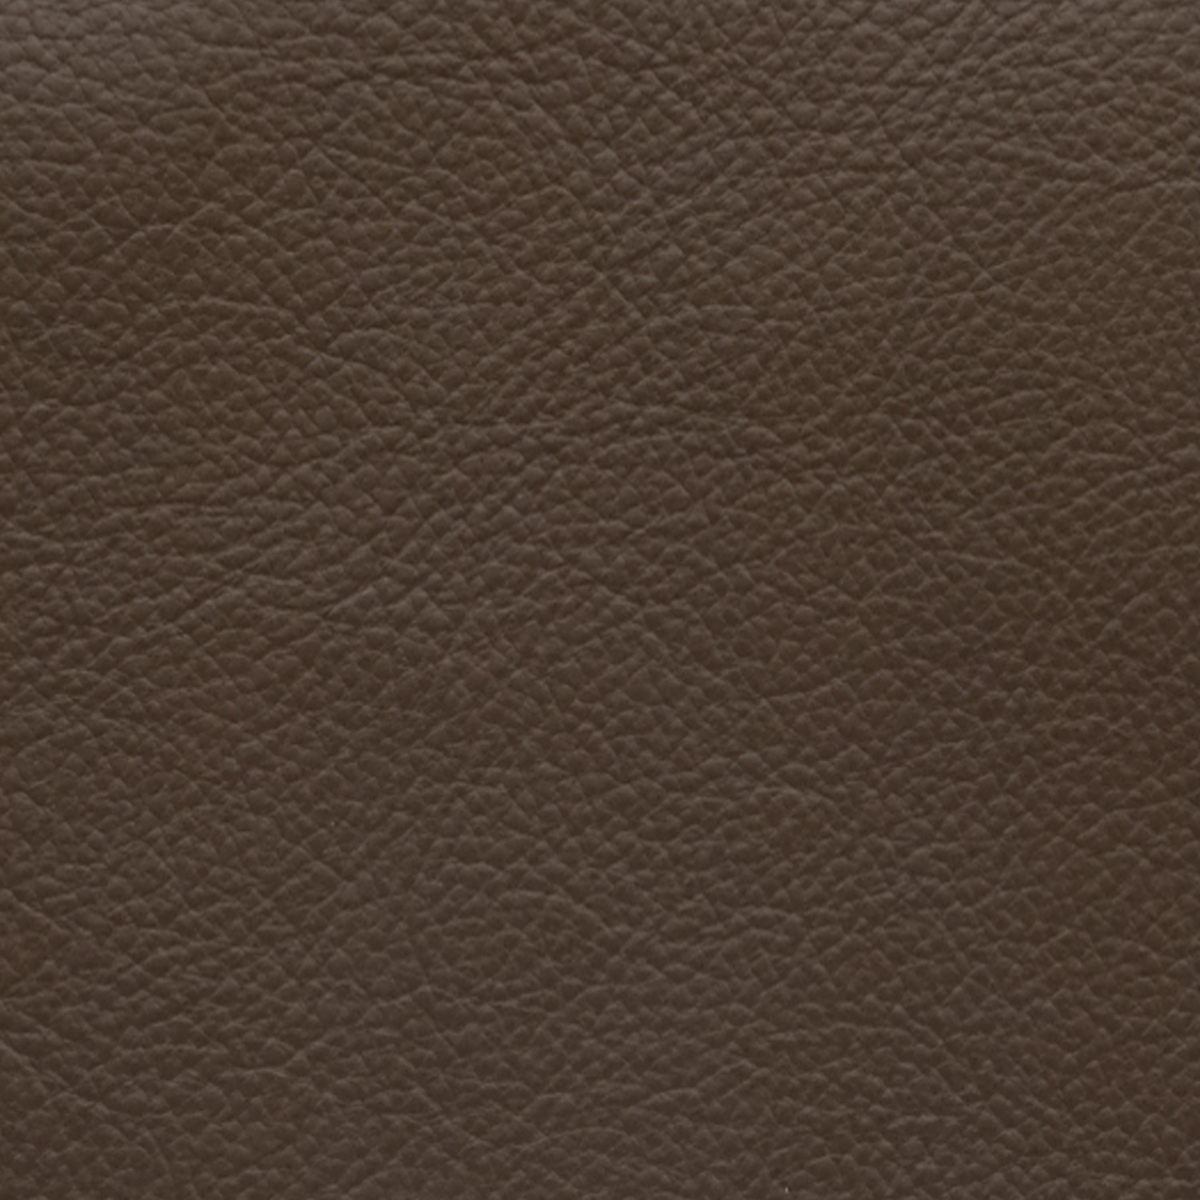 Cocoa Leather